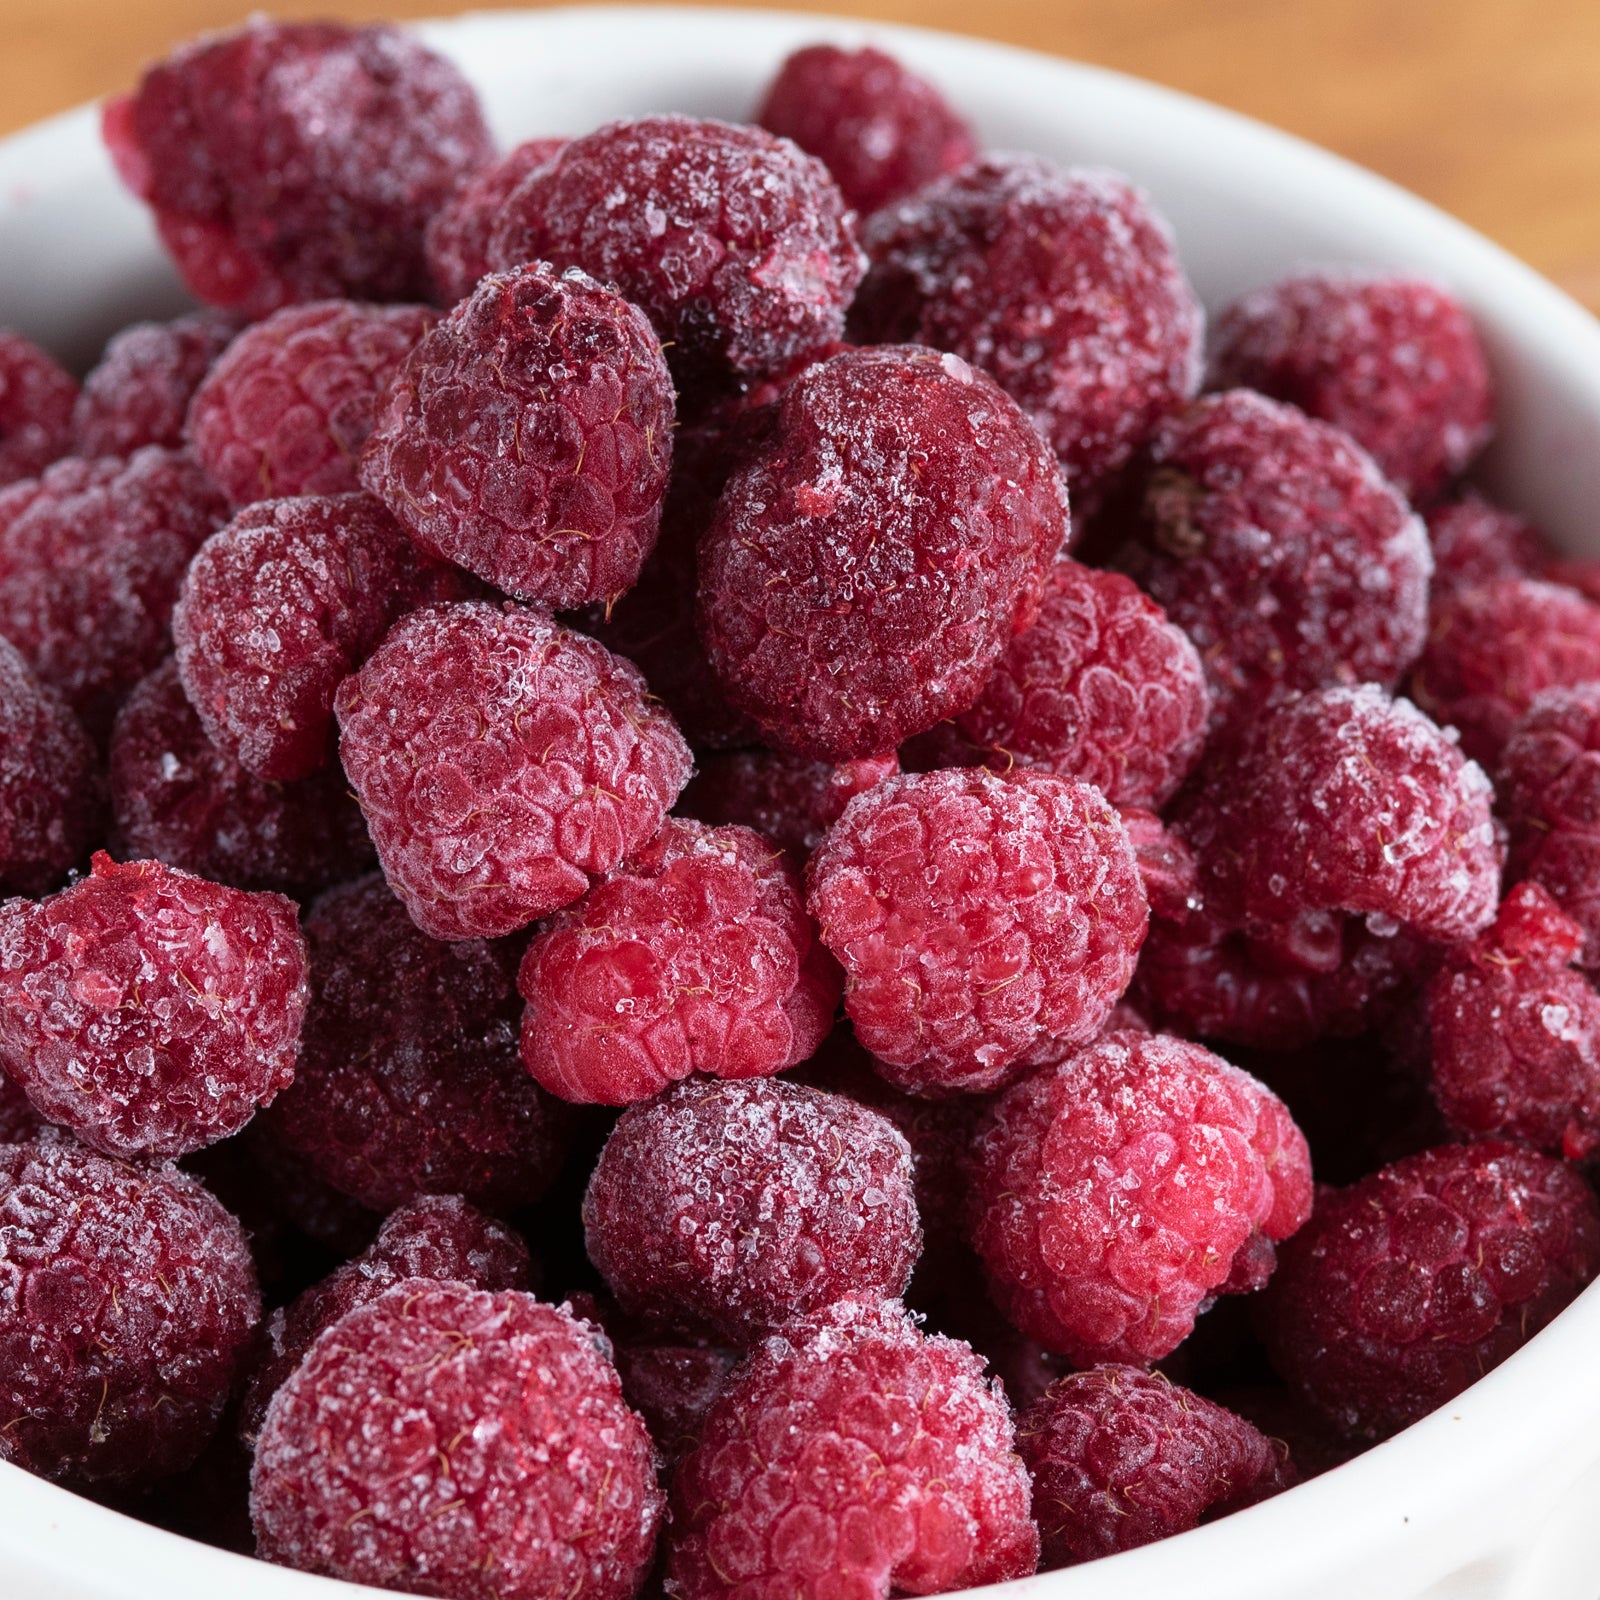 Certified Organic Frozen Raspberries from Turkey (1kg) - Horizon Farms